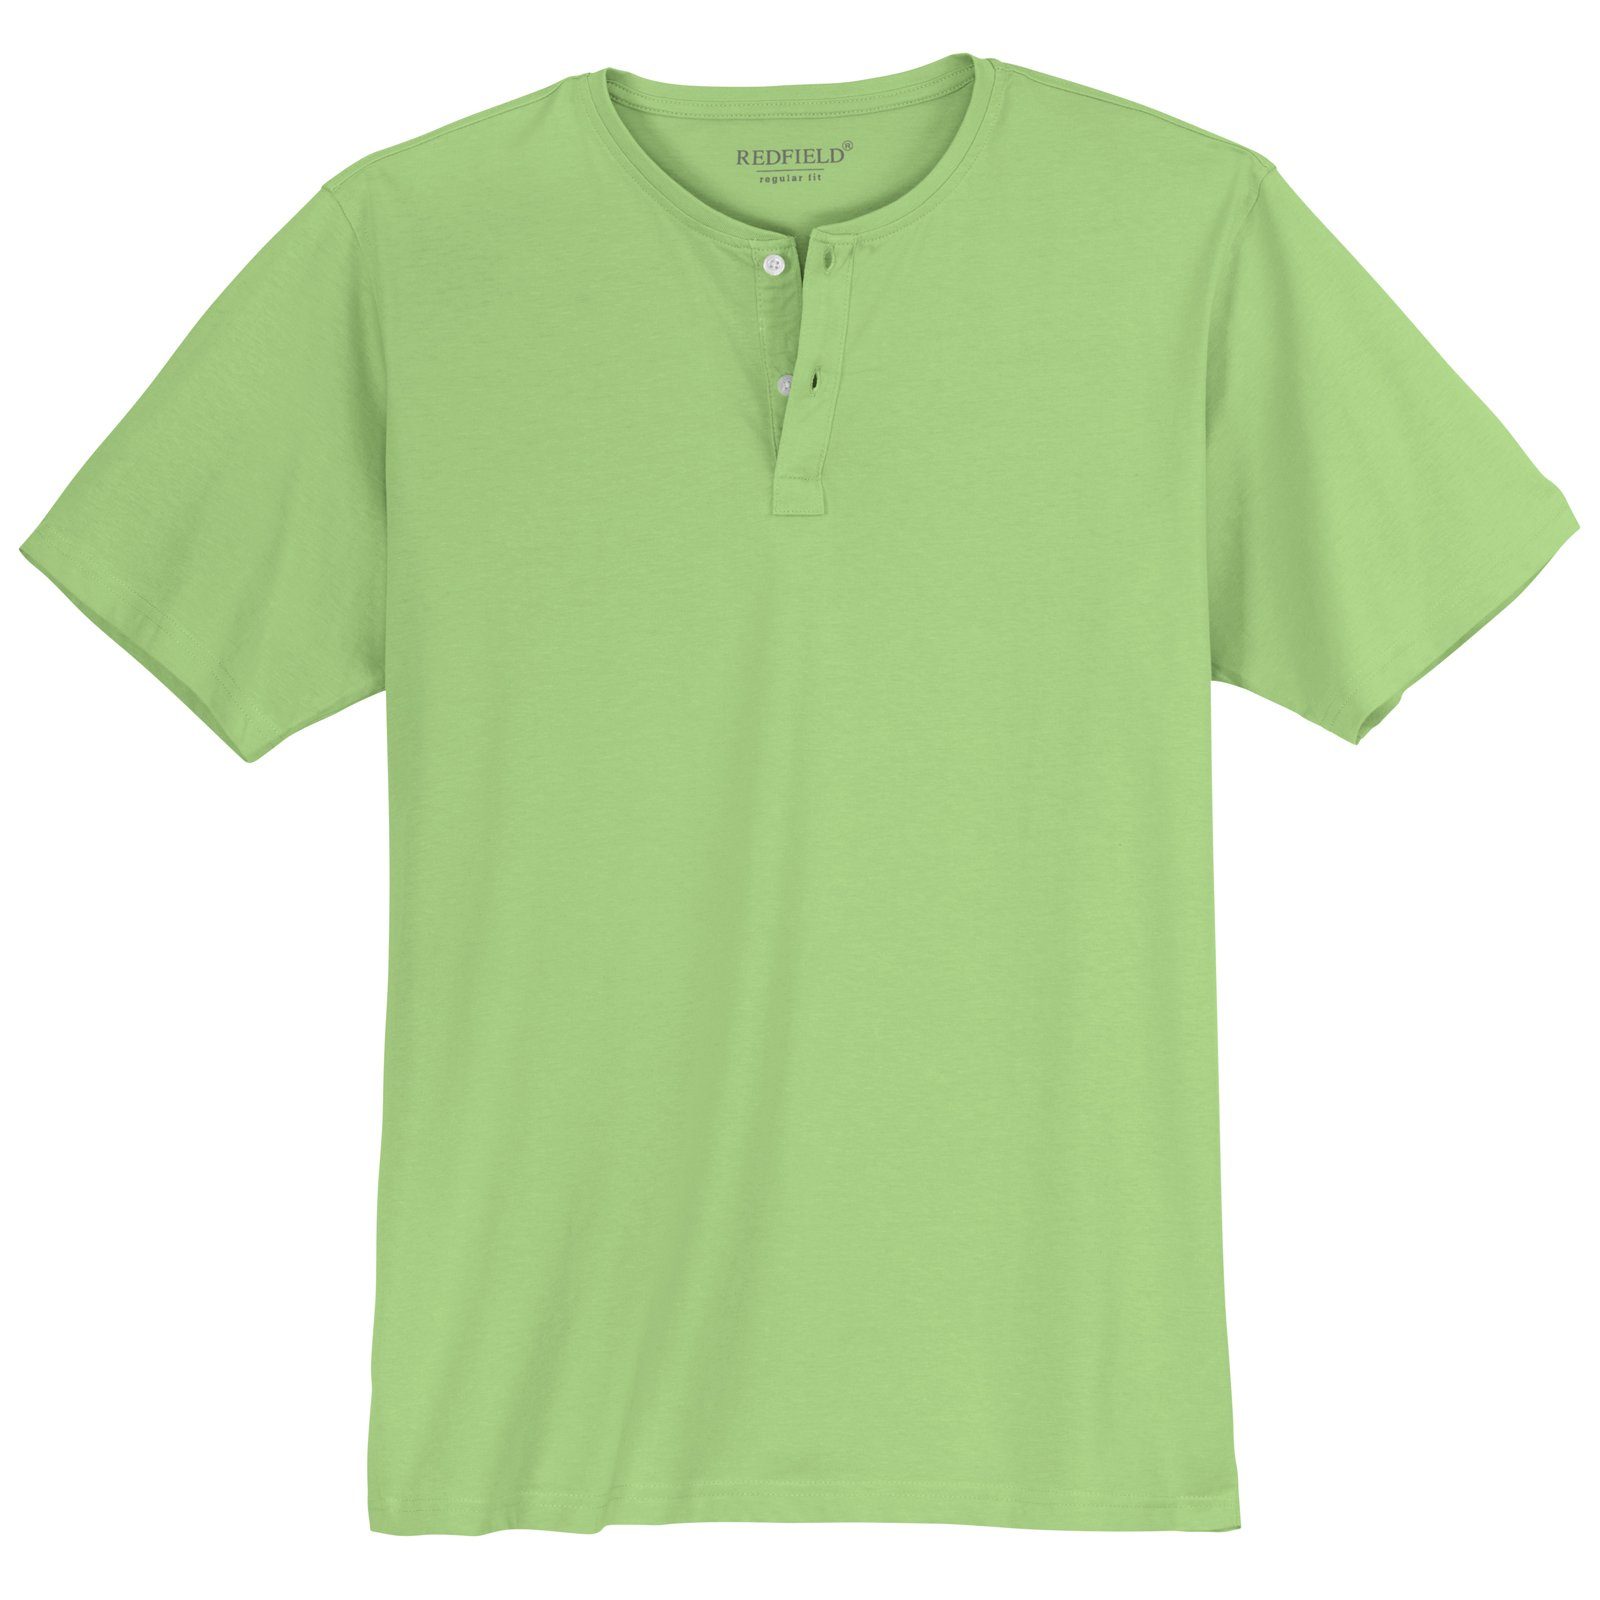 Große Rundhalsshirt hellgrün Knopfleiste T-Shirt Redfield redfield Herren Größen